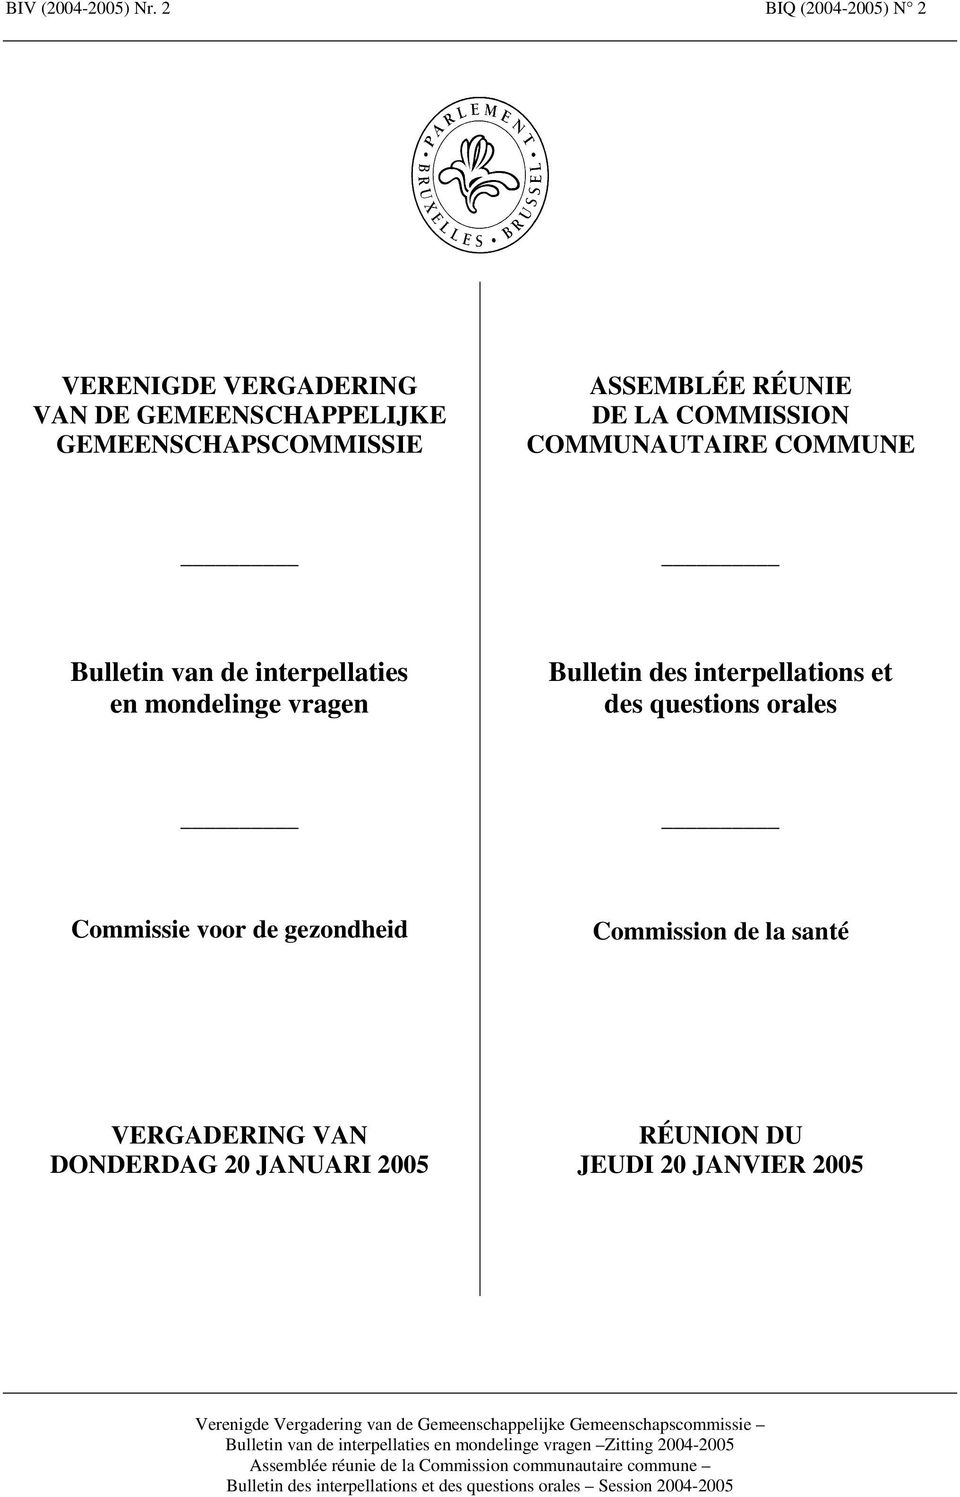 RÉUNIE DE LA COMMUNAUTAIRE COMMUNE Bulletin van de interpellaties en mondelinge vragen